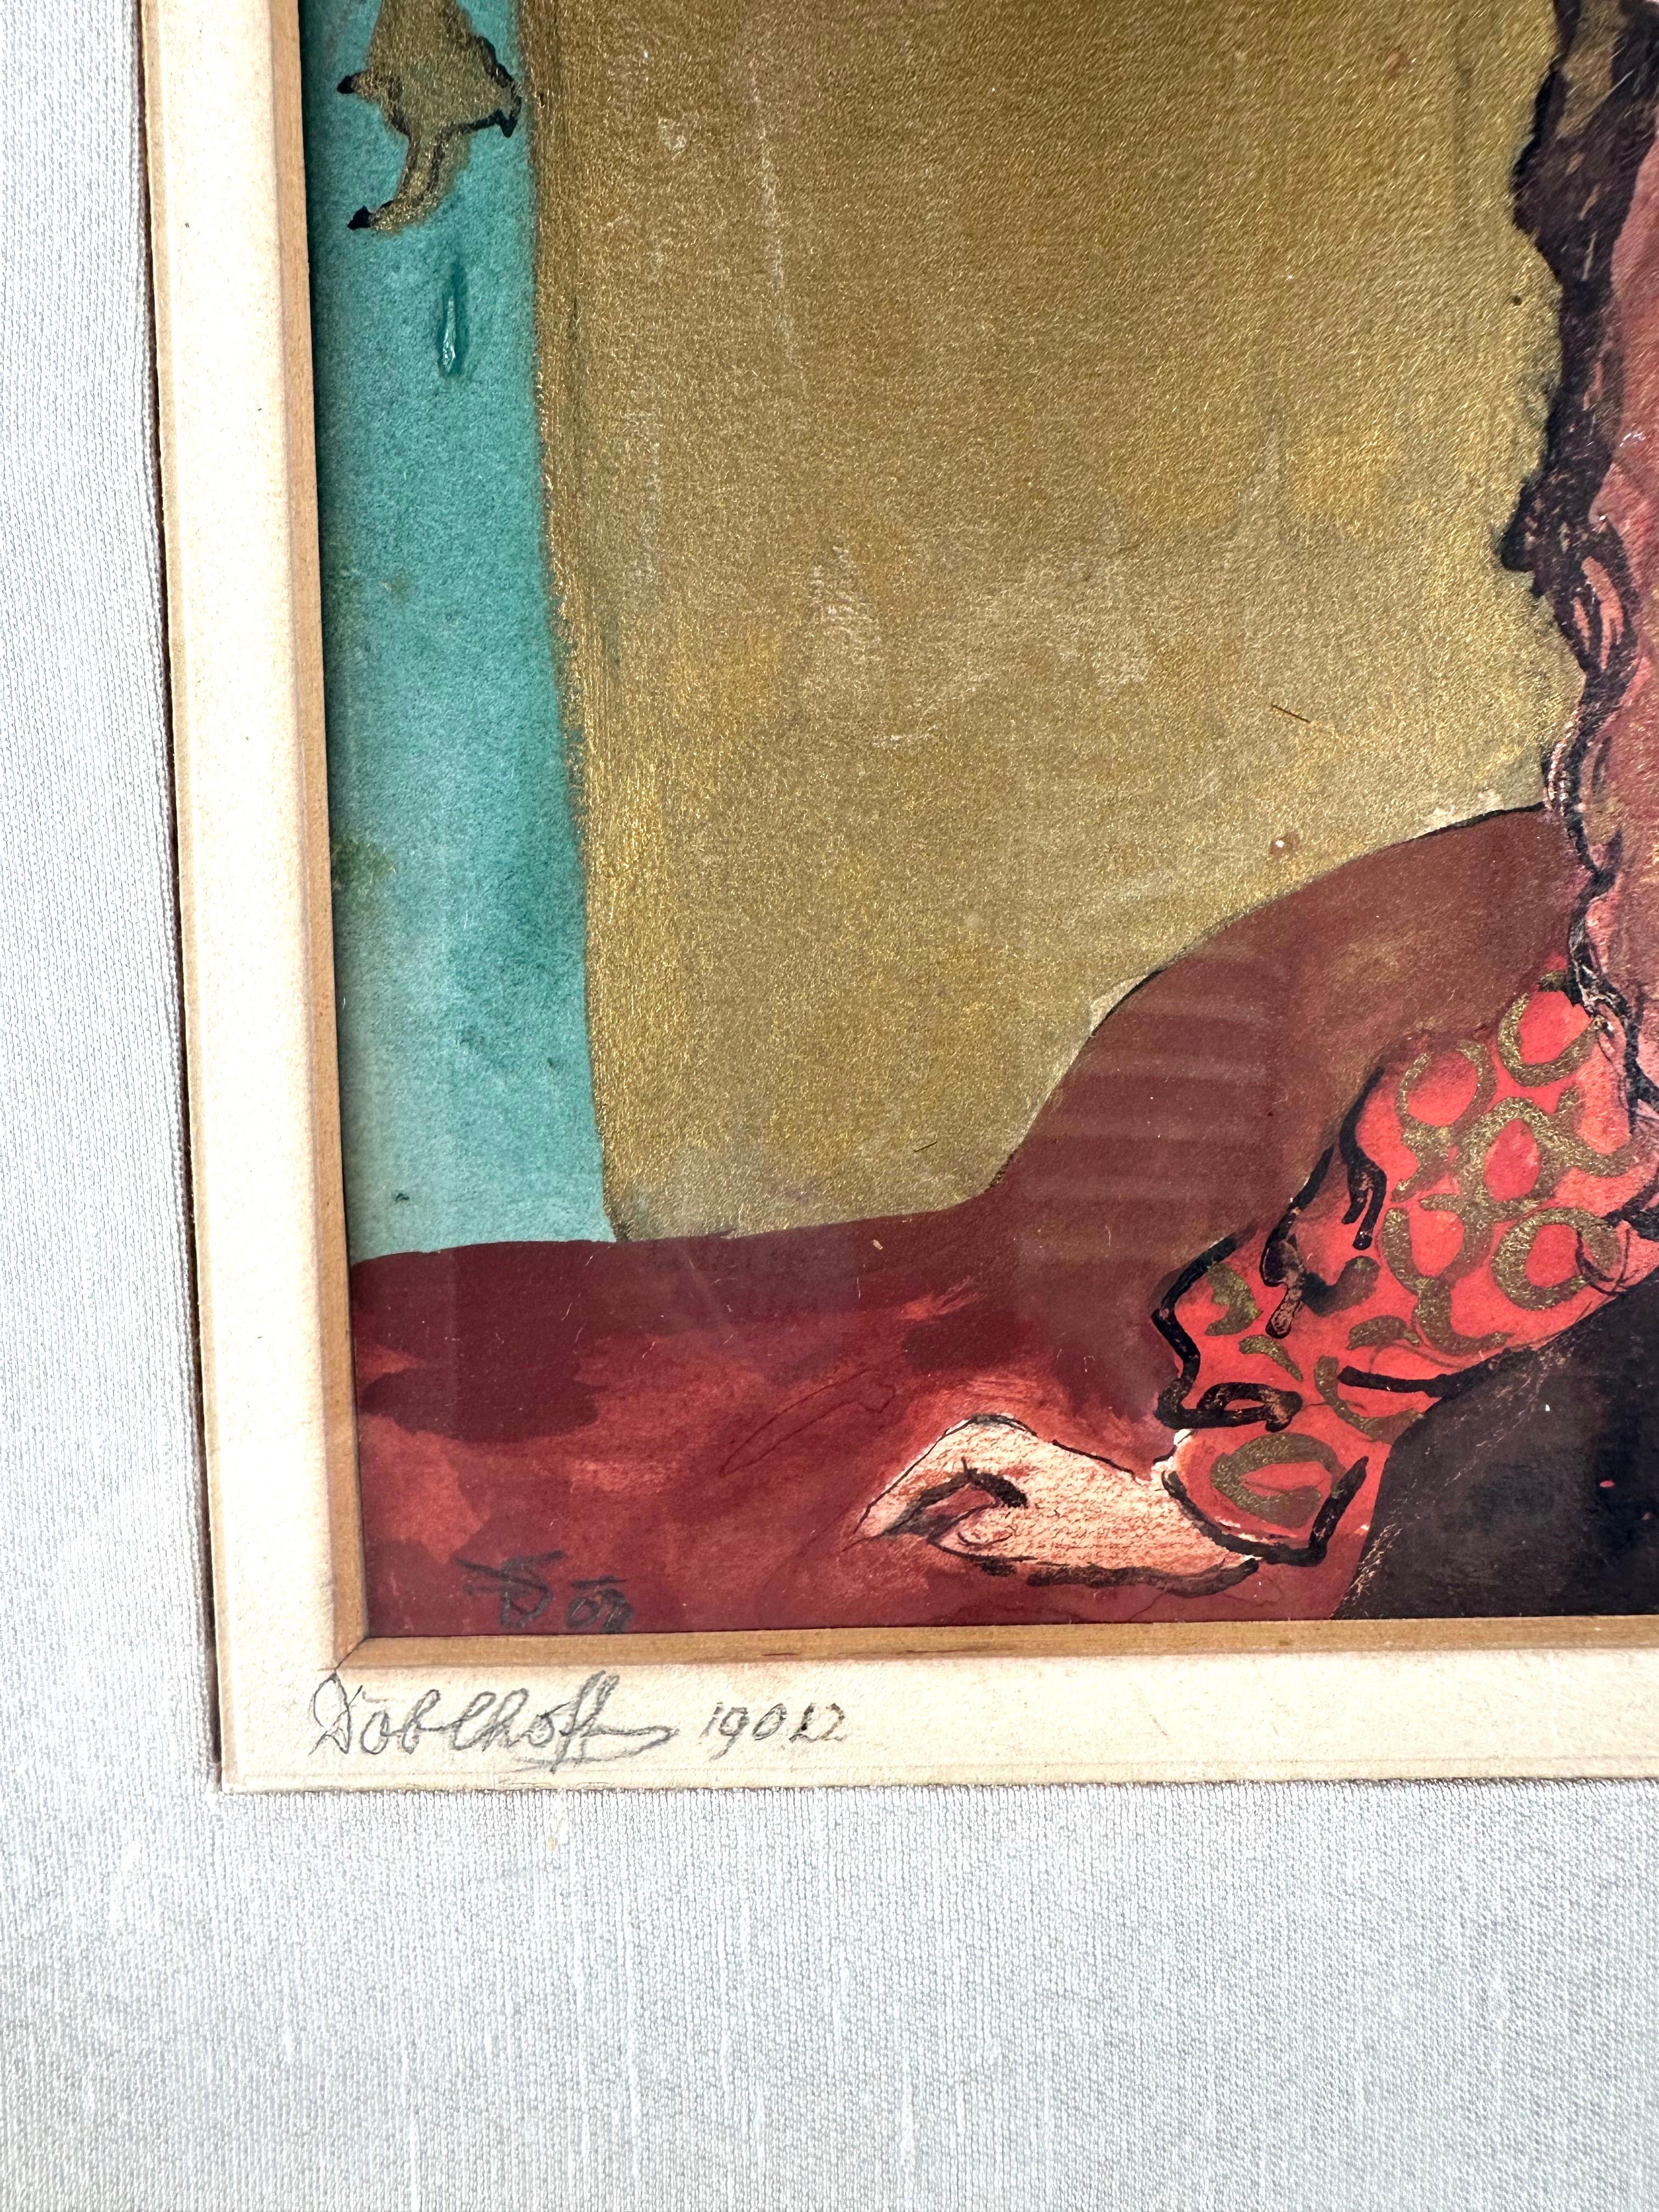 Freiherr Robert Heinrich Freiherr von Doblhoff (1880 Wien - 1960 ebd.) 

Frau mit rotem Haar 

Tinte und Aquarell auf Papier, Bild misst 6,25 x 7,25 Zoll; 12,75 x 13,5 Zoll gerahmt. 

Signiert unten links mit Künstlermonogramm in Bleistift. Auf dem